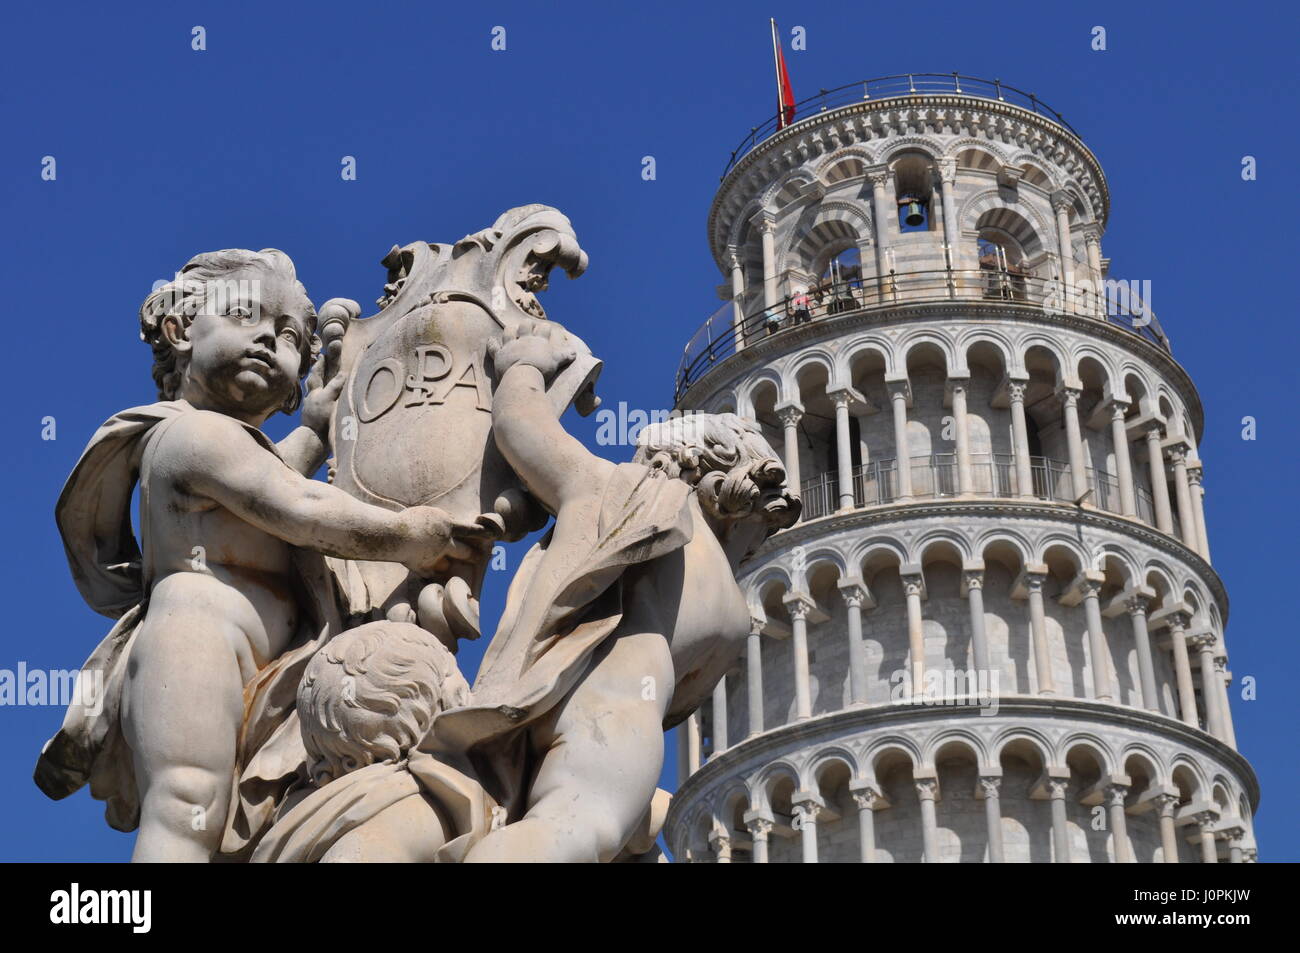 La Torre Inclinada de Pisa o simplemente de la Torre de Pisa es el campanario o Torre campanario independiente, de la catedral de la ciudad italiana de Pisa, saber Foto de stock